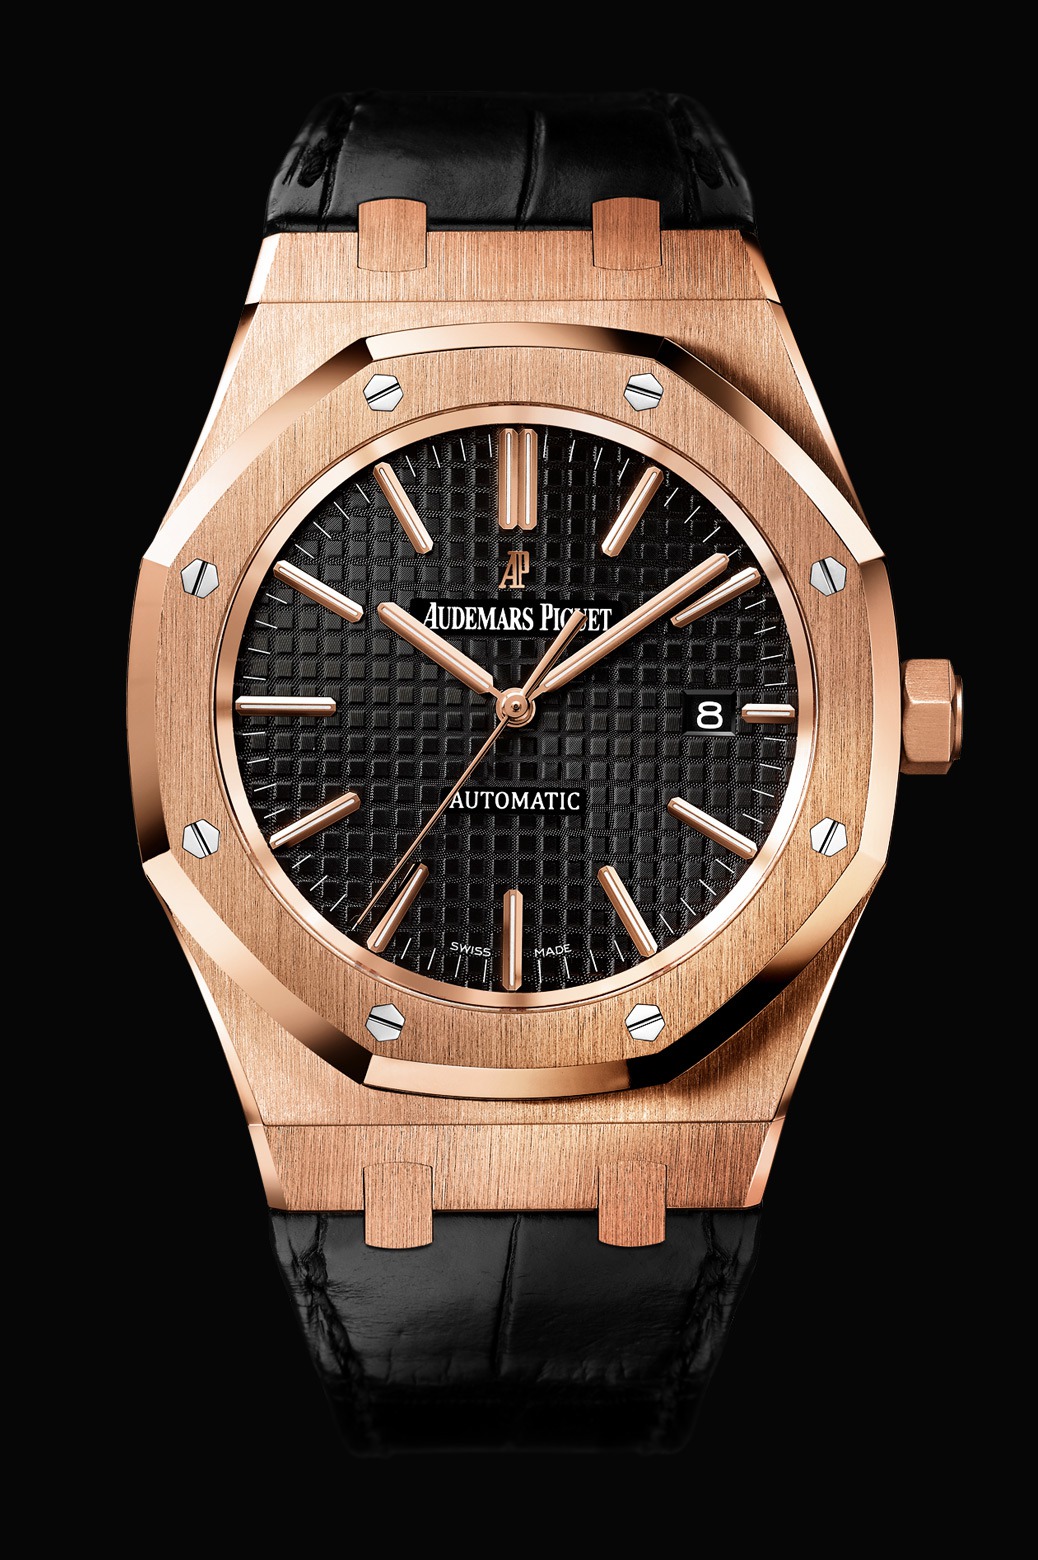 Audemars Piguet Royal Oak Automatic Pink Gold watch REF: 15400OR.OO.D002CR.01